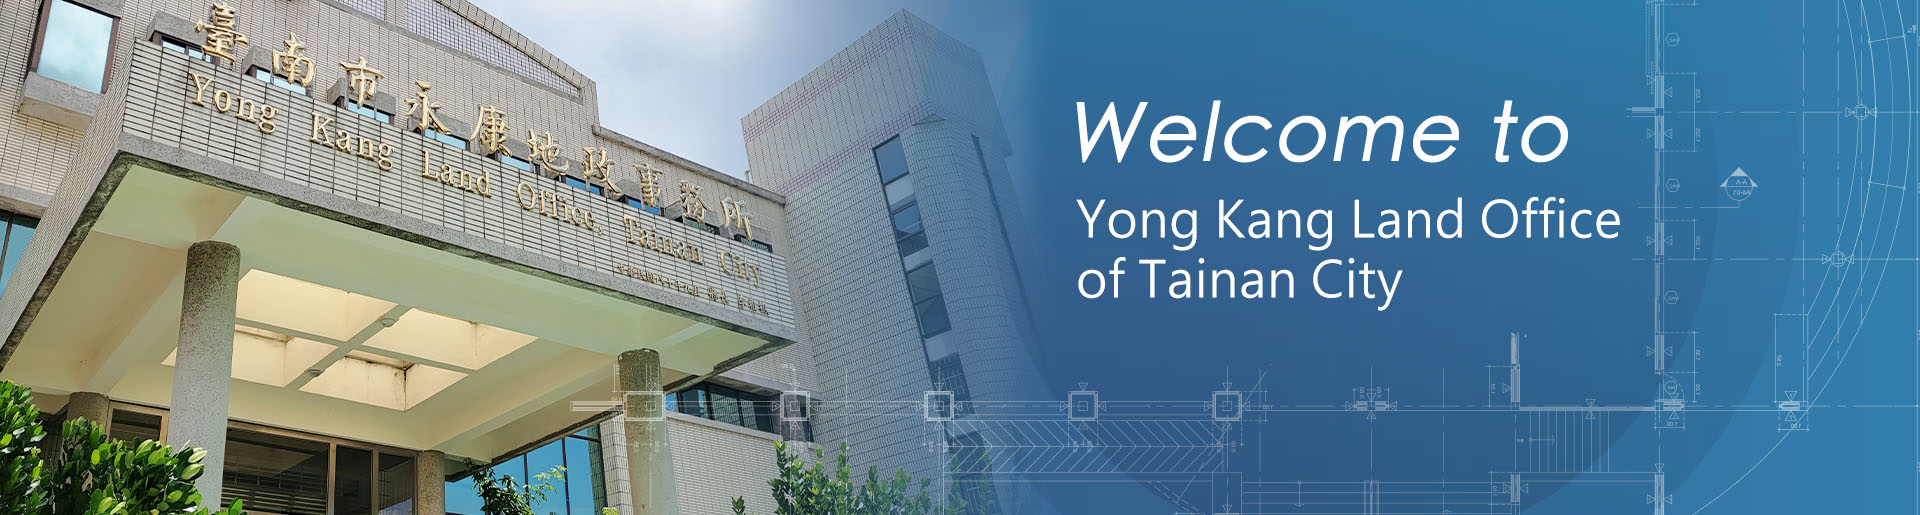 Yong Kang Land Office of Tainan City